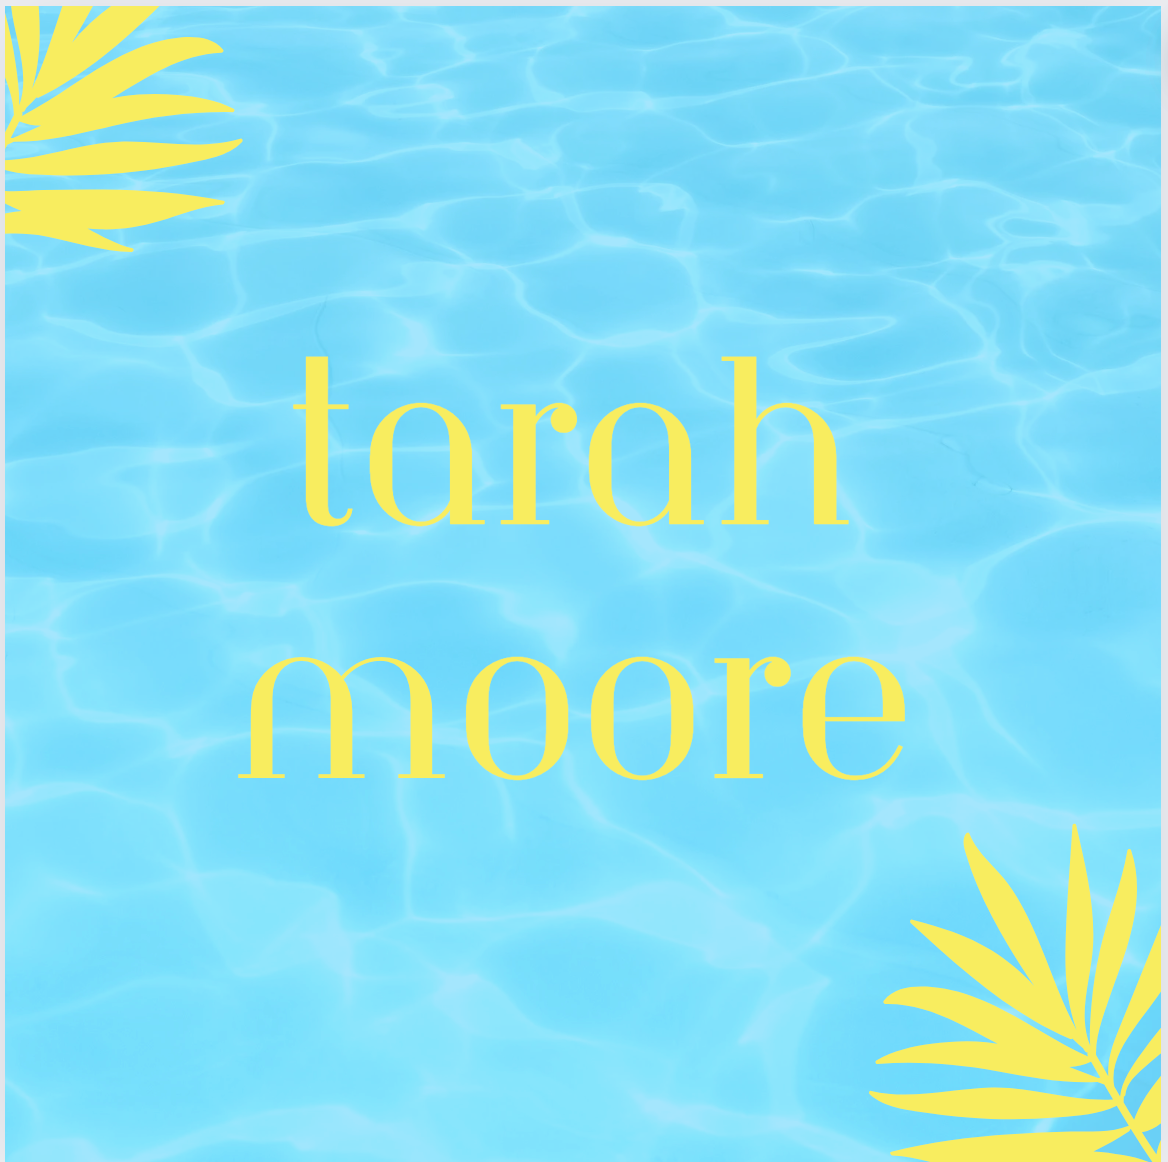 Tarah Moore